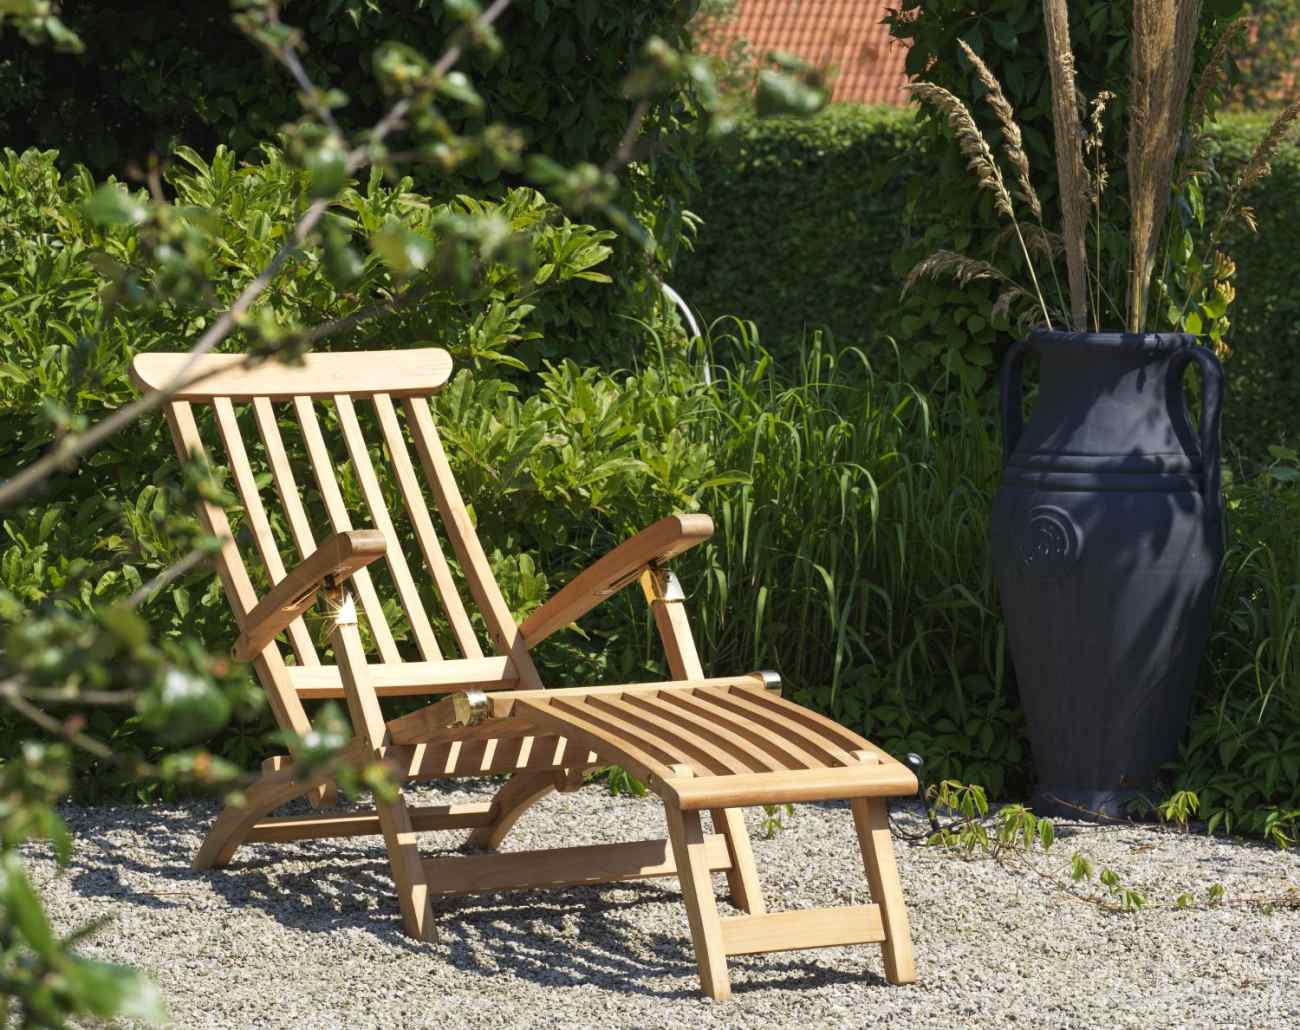 Der Liegestuhl Jackson überzeugt mit seinem modernen Design. Gefertigt wurde er aus Teakholz, welches einen natürlichen Farbton besitzt. Das Gestell ist auch aus Teakholz und hat eine natürliche Farbe. Die Sitzhöhe des Stuhls beträgt 28 cm.